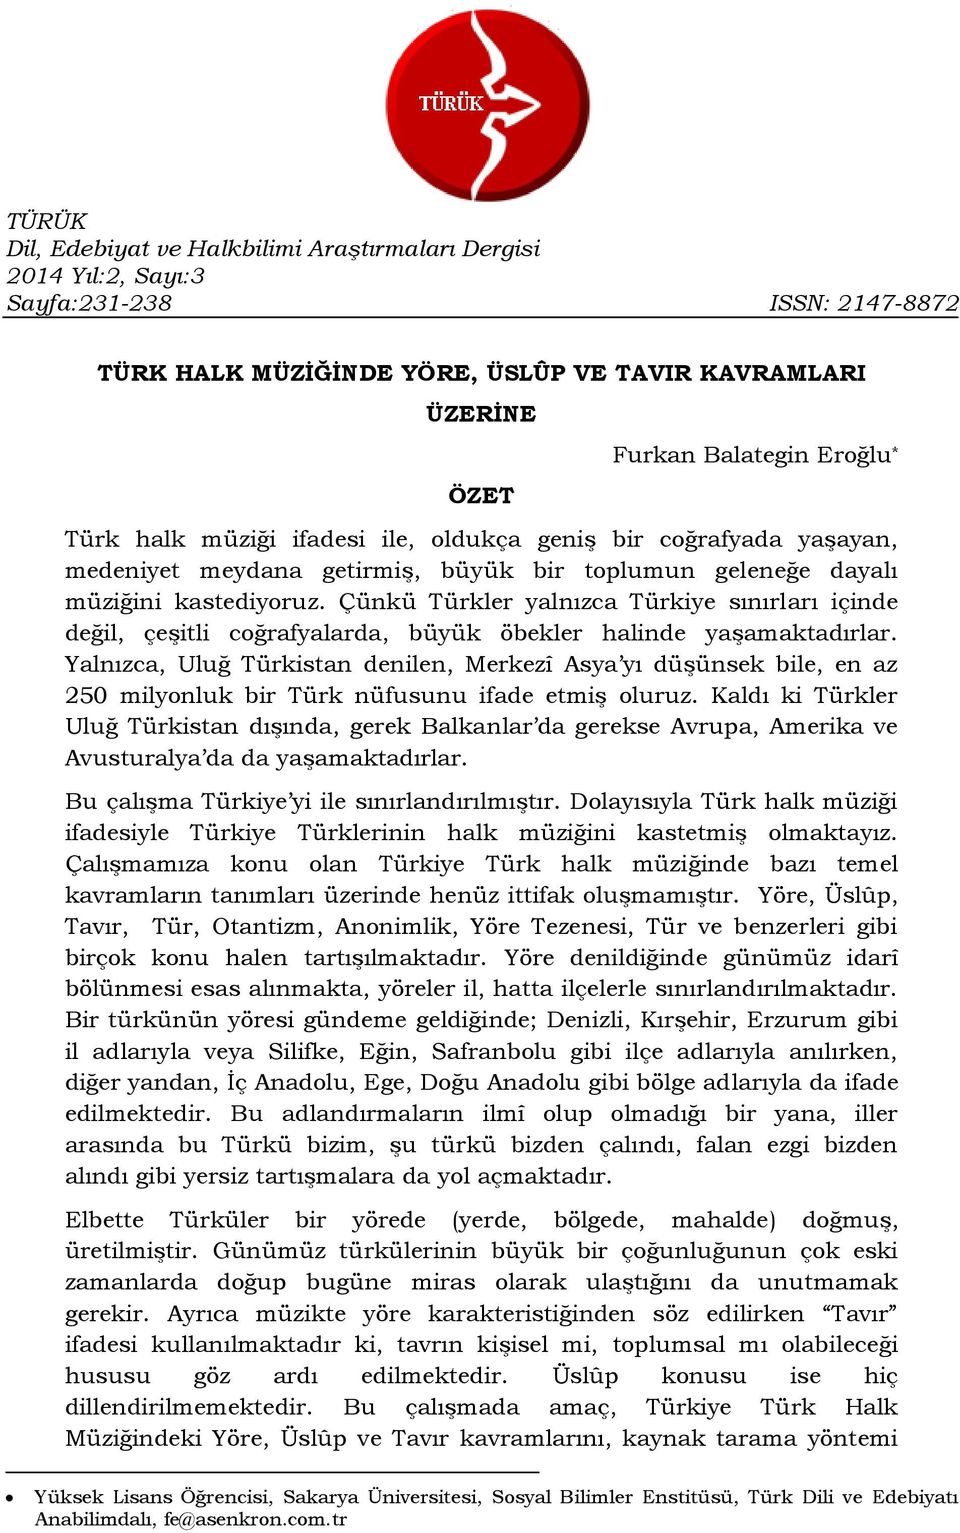 Çünkü Türkler yalnızca Türkiye sınırları içinde değil, çeşitli coğrafyalarda, büyük öbekler halinde yaşamaktadırlar.